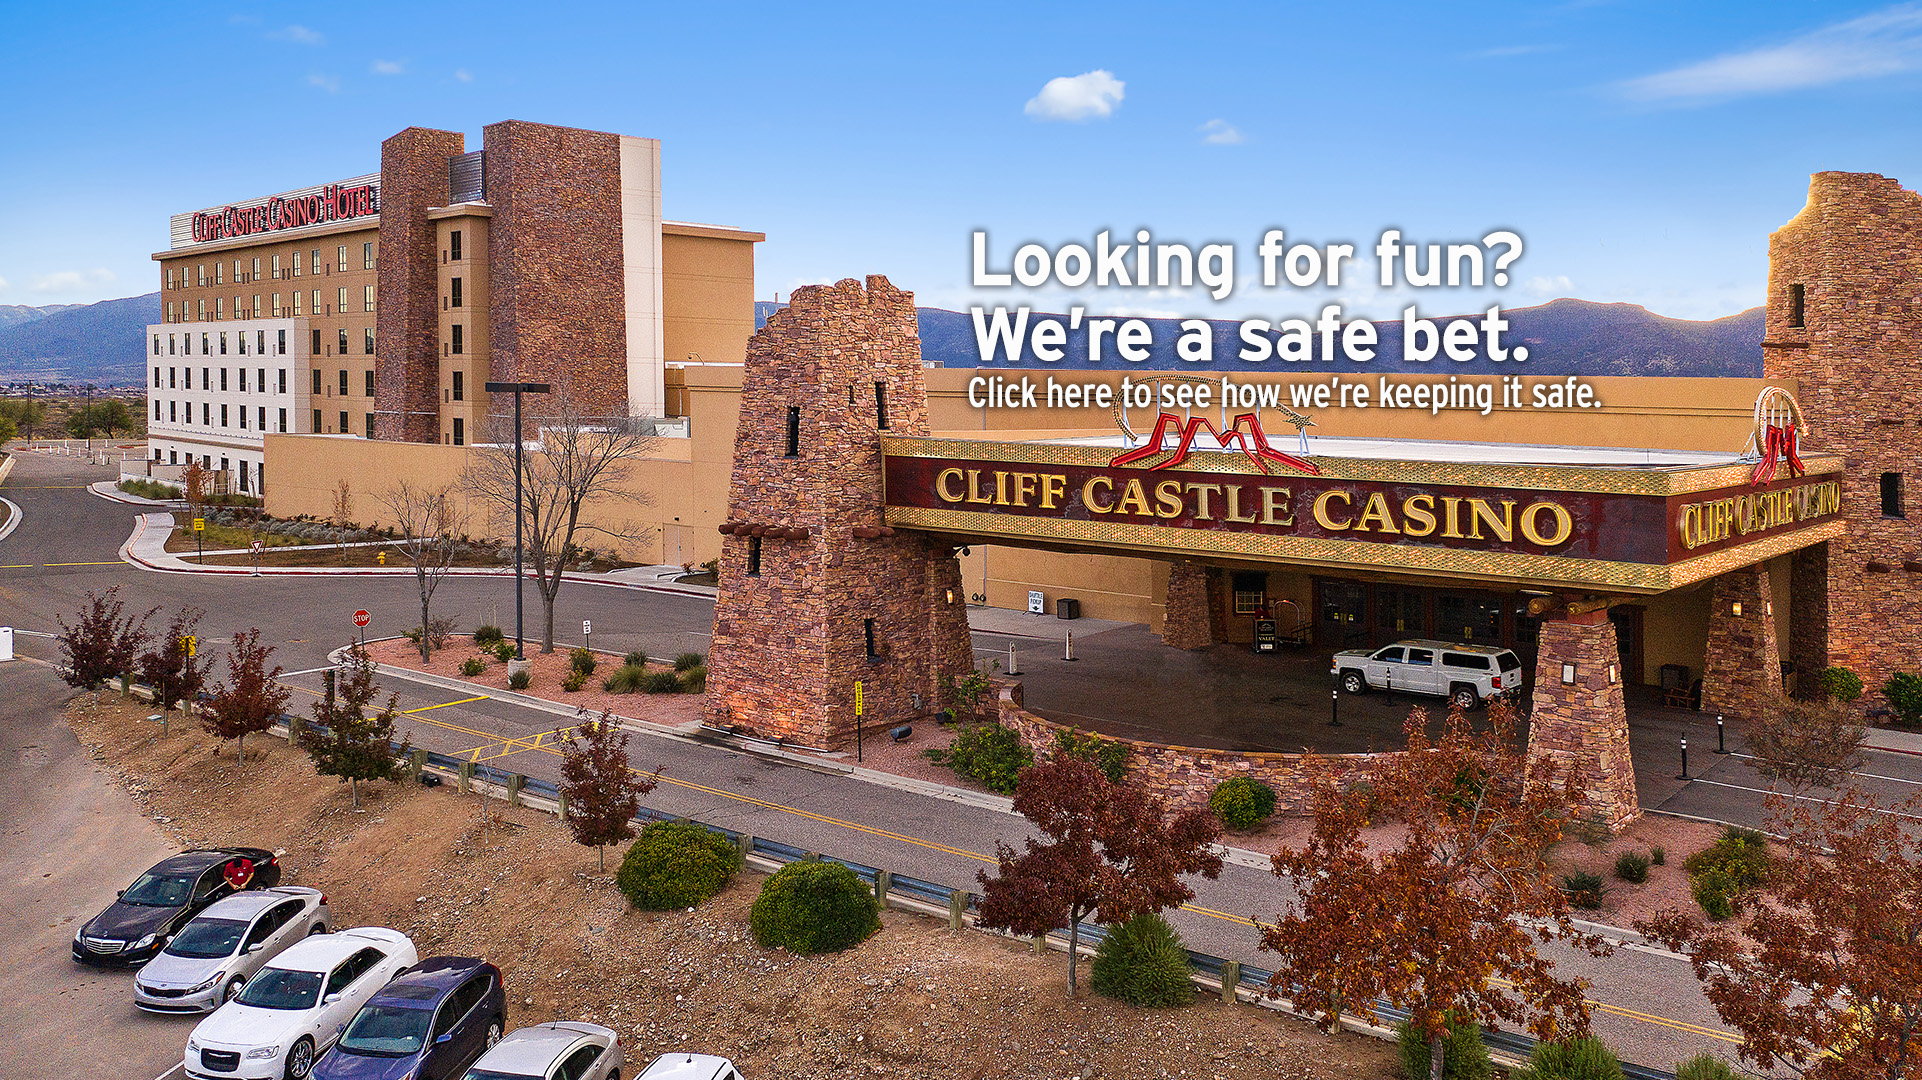 new castle casino